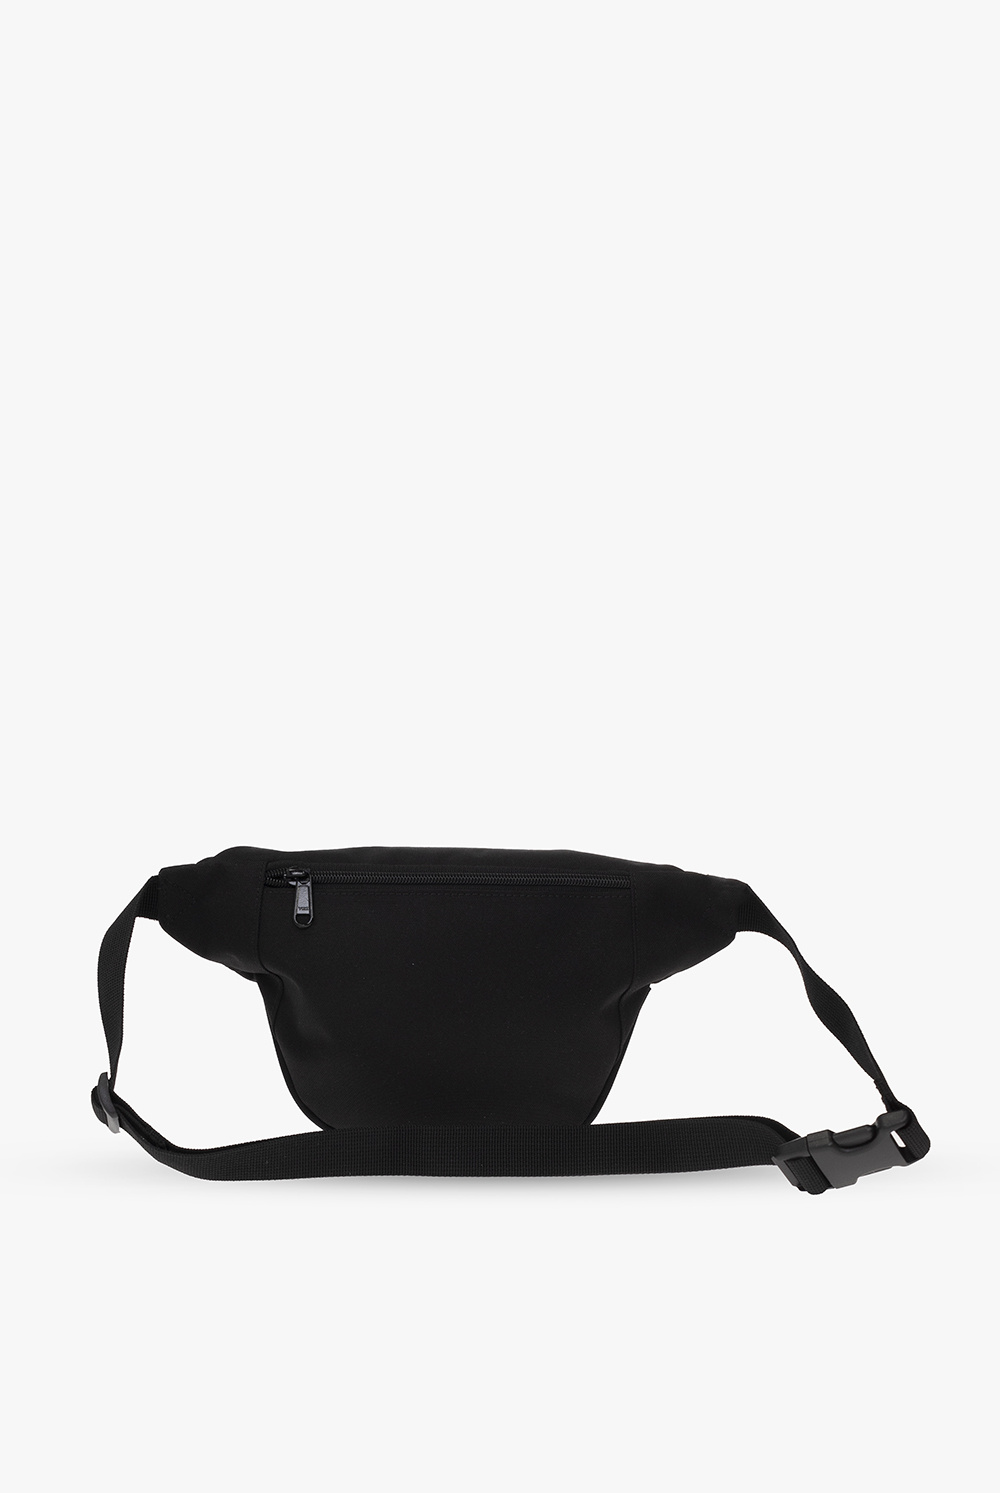 CARHARTT WIP Jake Hip Logo-Appliquéd Canvas Belt Bag for Men in